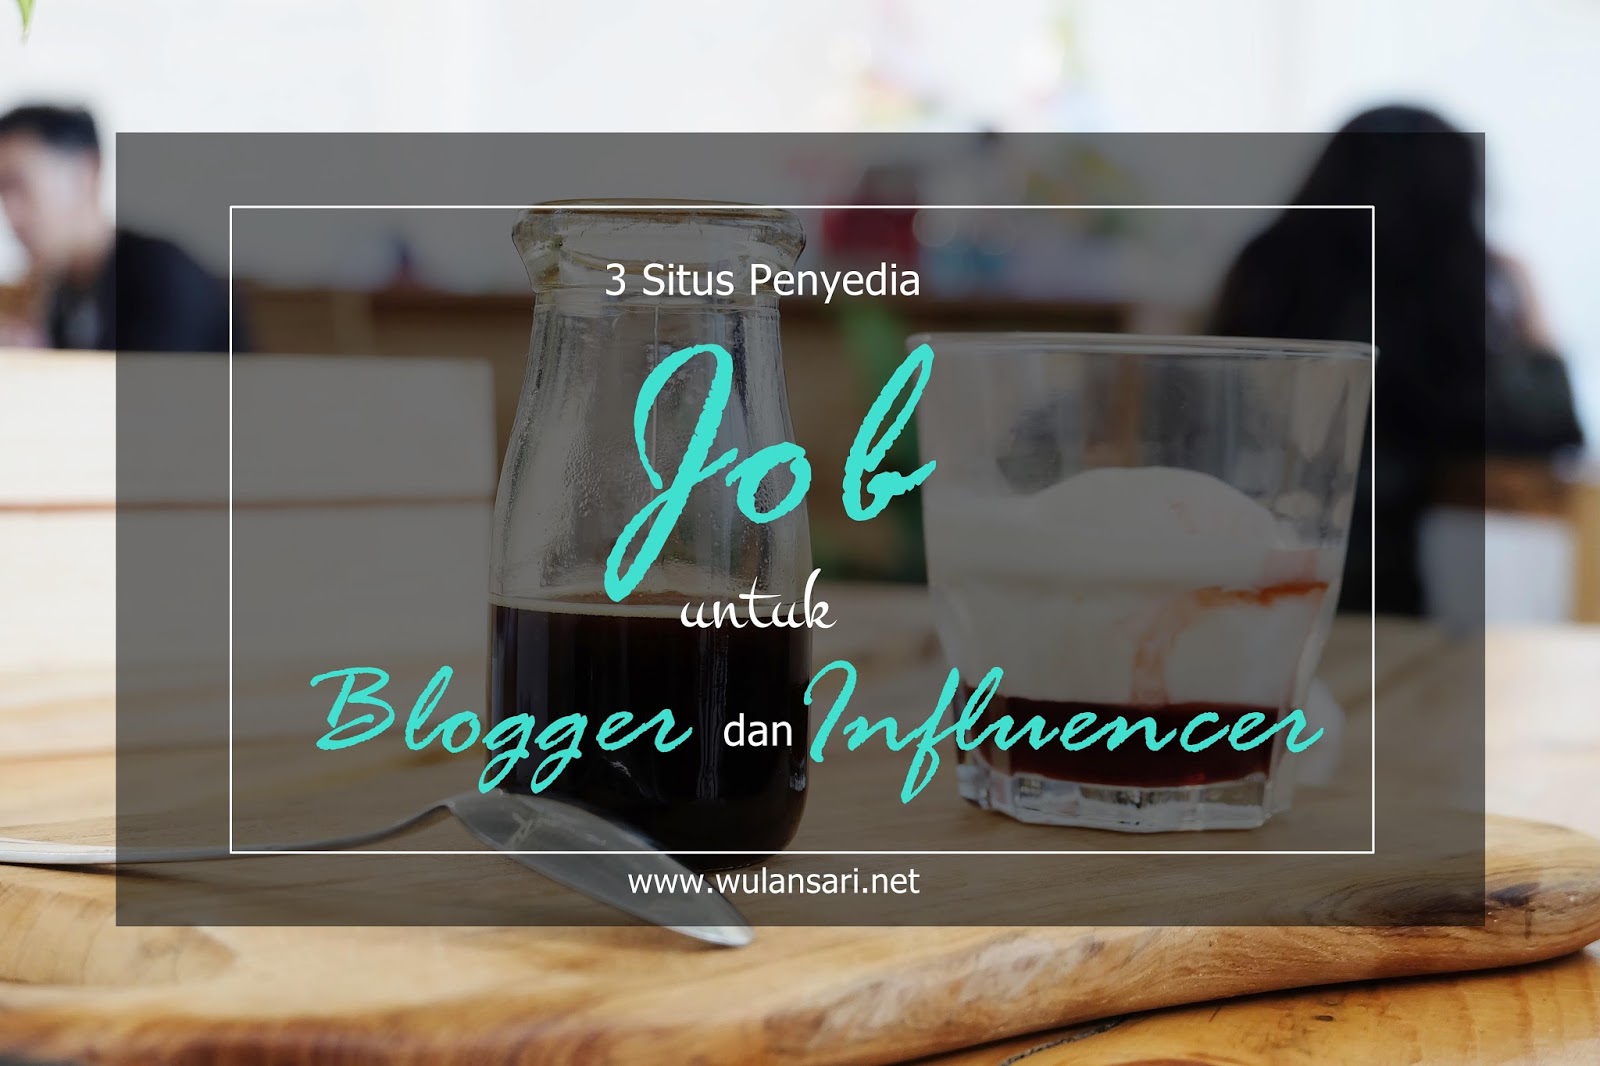 3 Situs Penyedia Job untuk Blogger dan Influencer